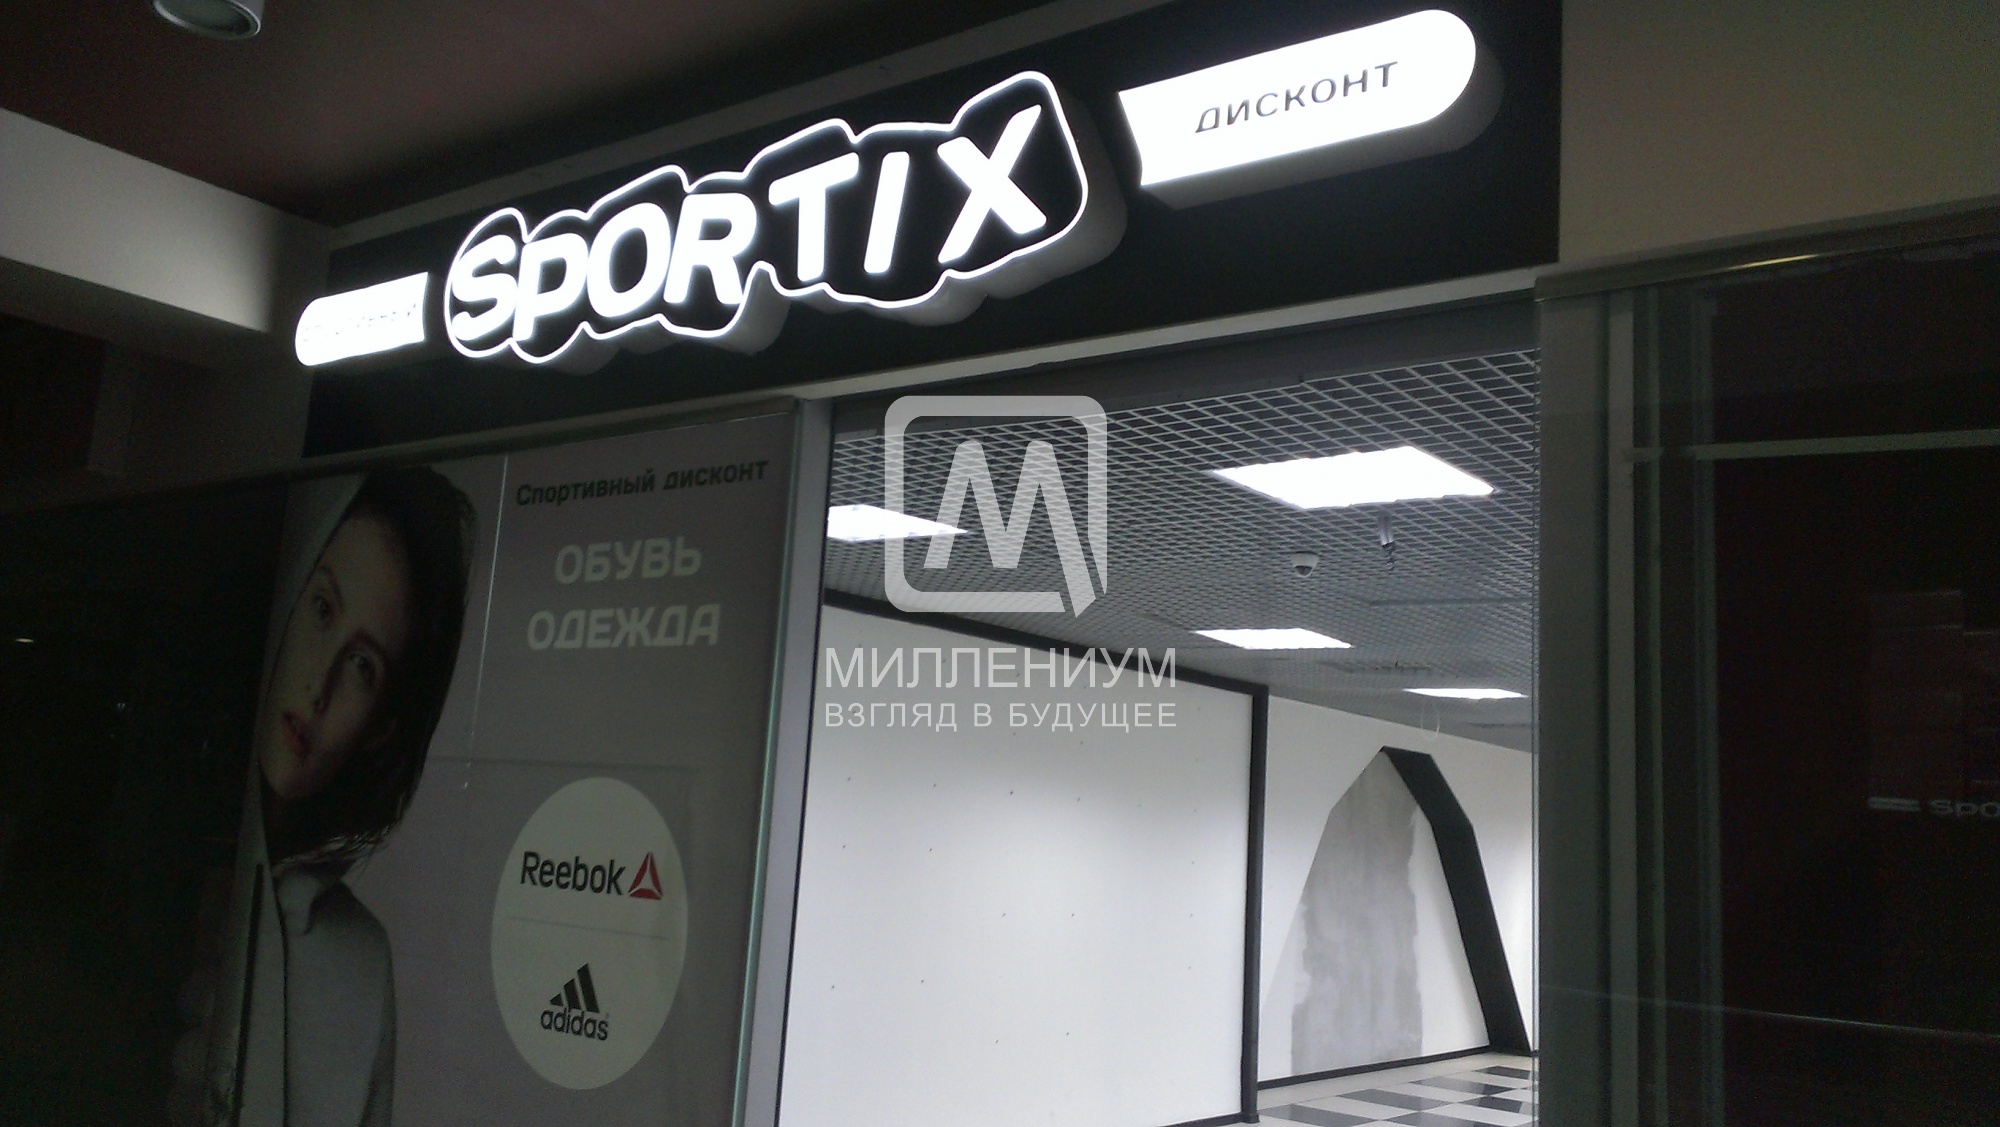 Спортикс Кострома Интернет Магазин Кострома